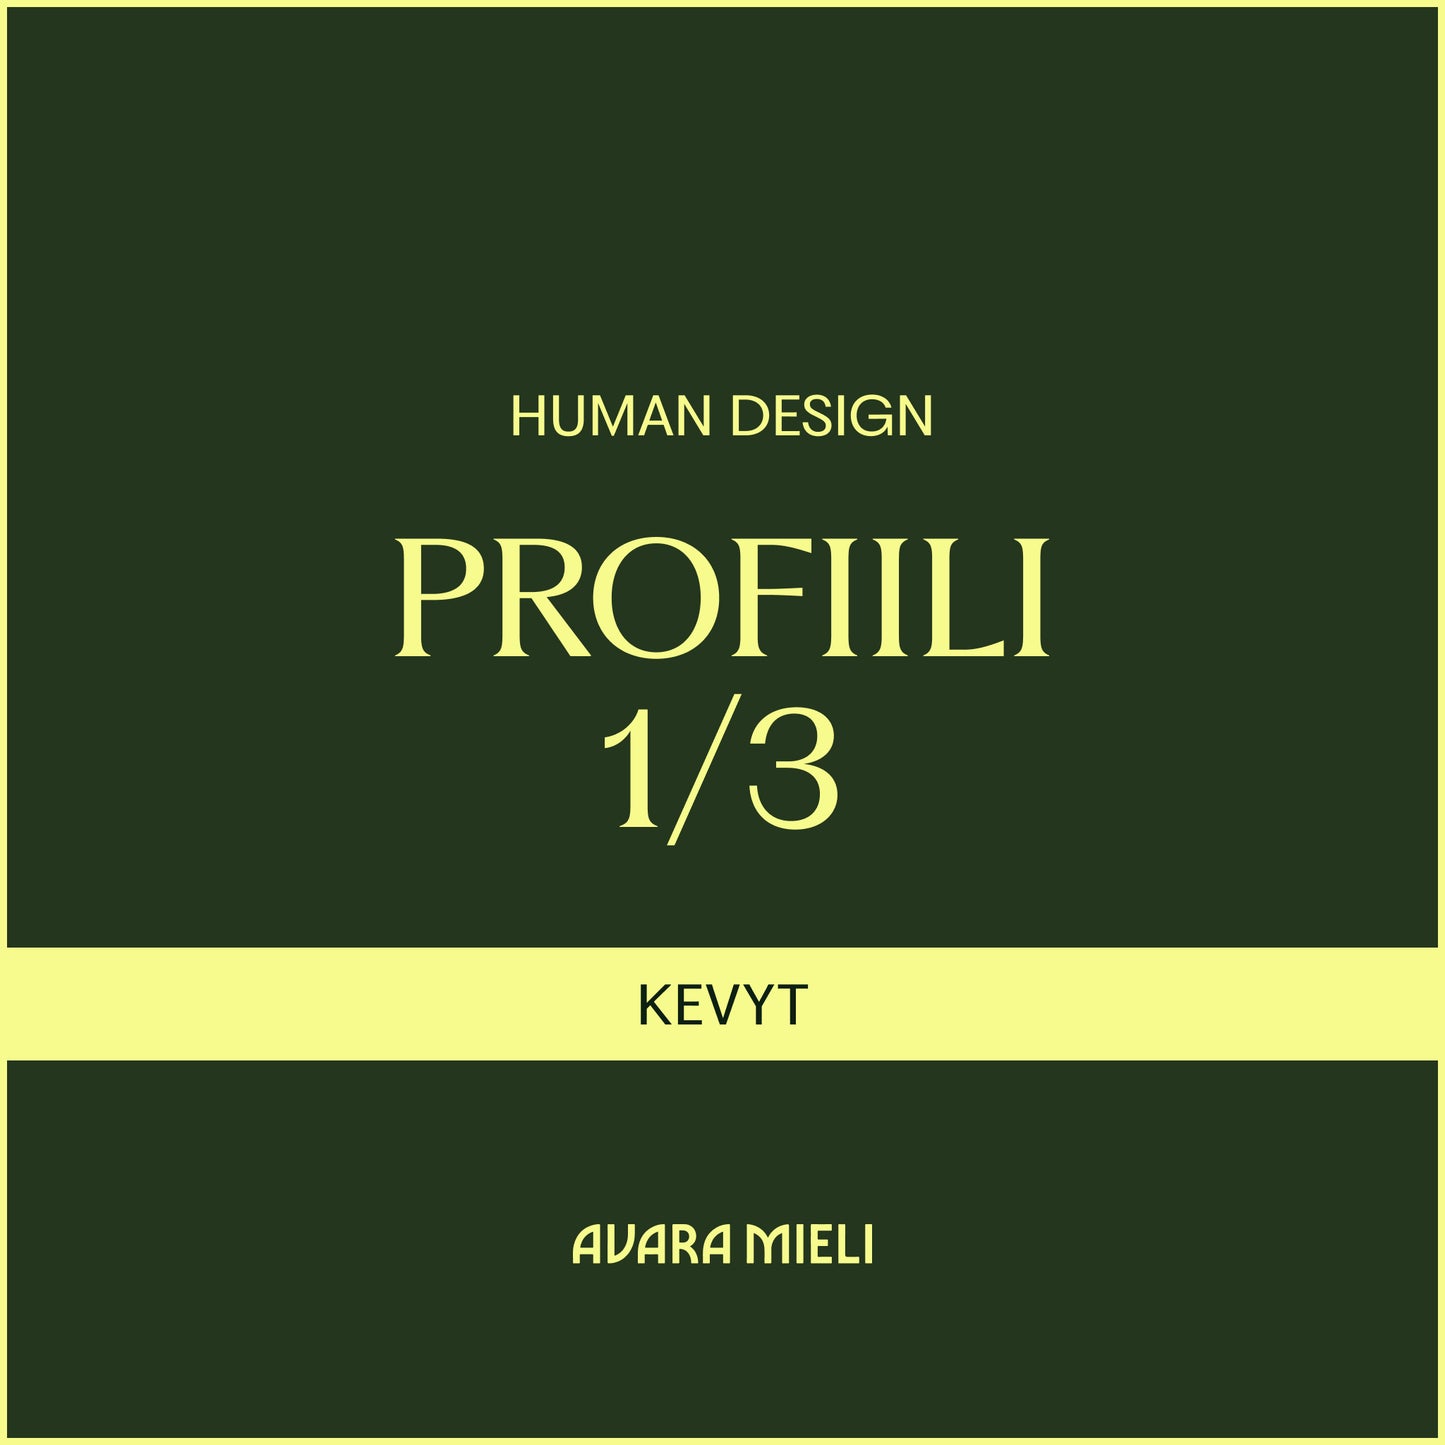 Human Design Profiili 1/3